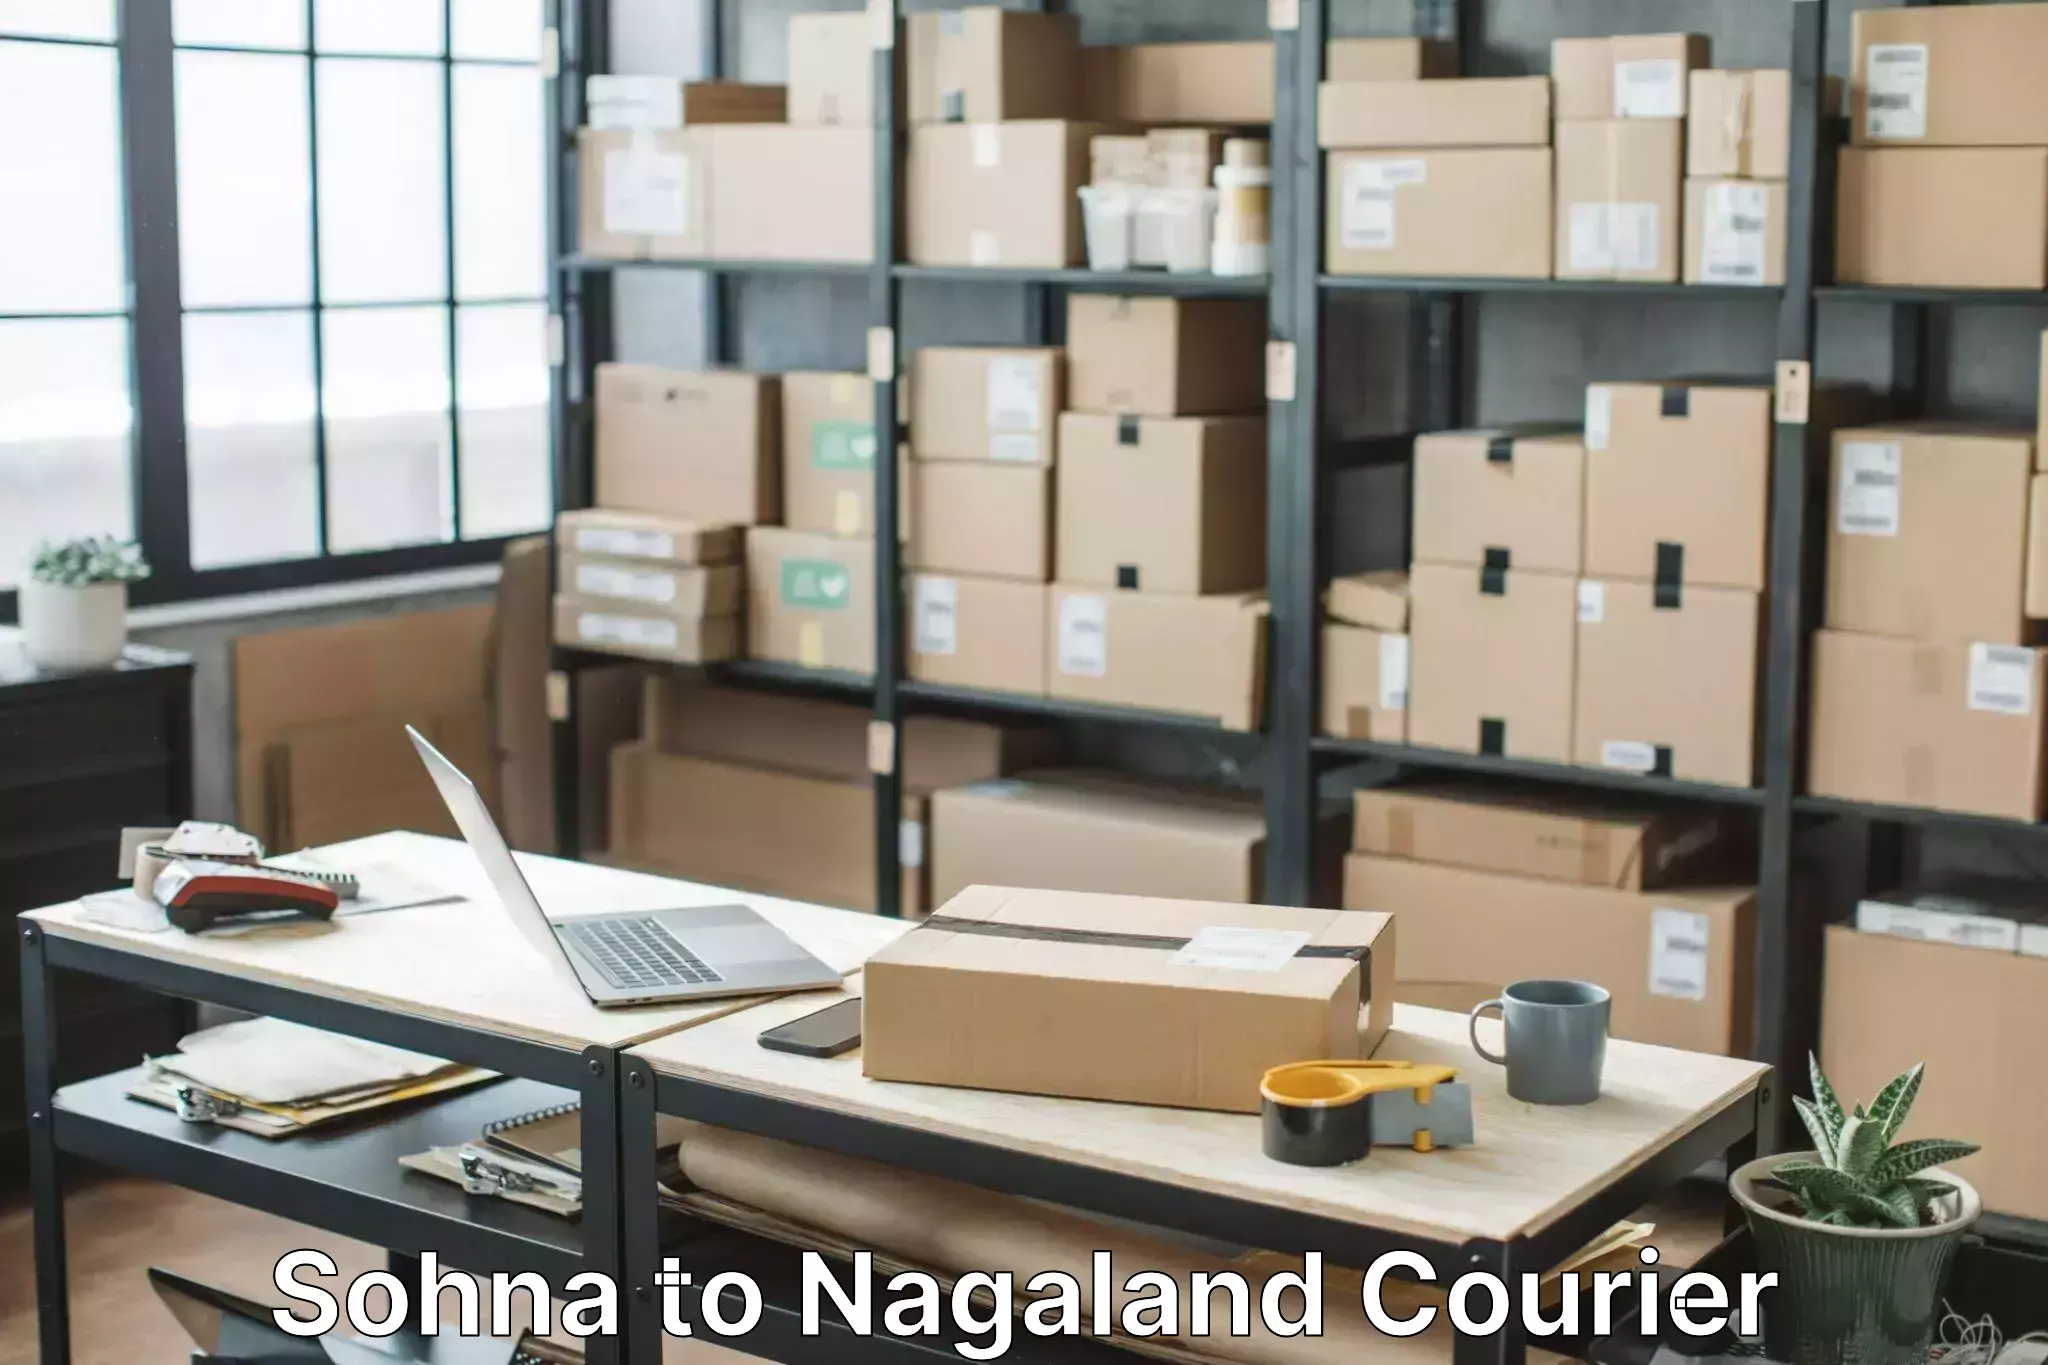 Full-service movers Sohna to Nagaland